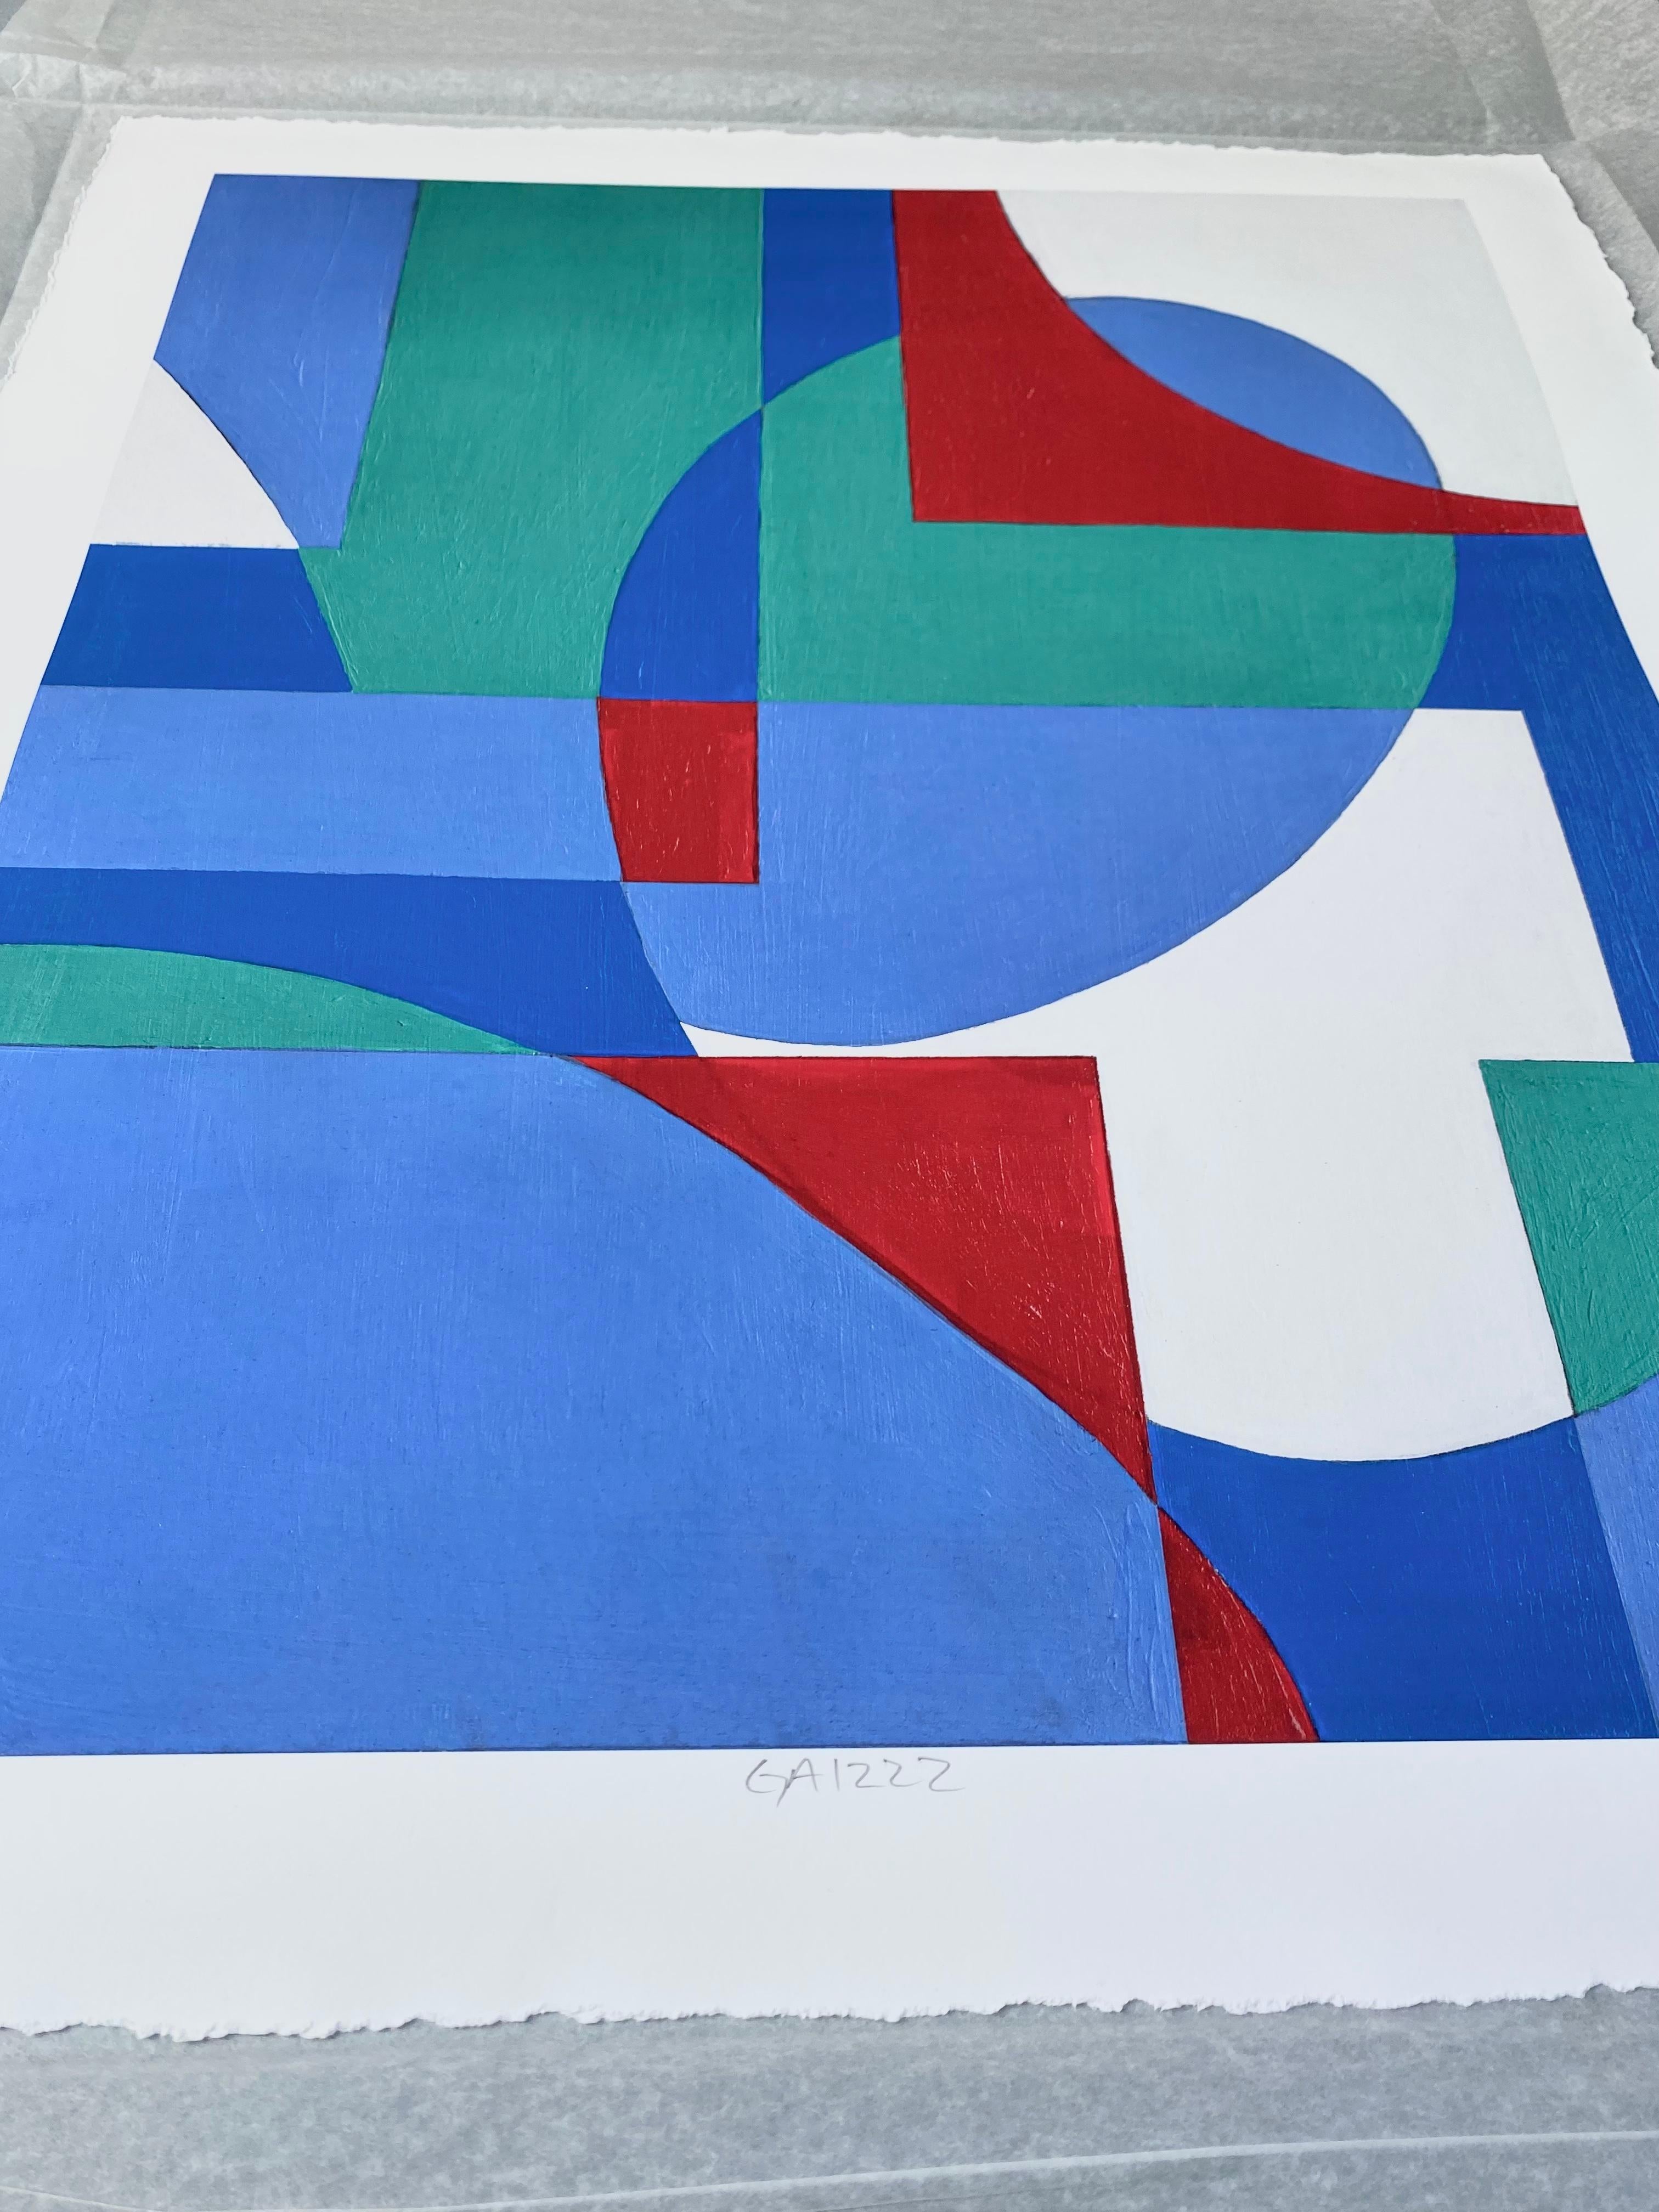 Tirage géométrique abstrait giclée signé GA1222, édition limitée 2/10 - Géométrique abstrait Print par Zach Touchon